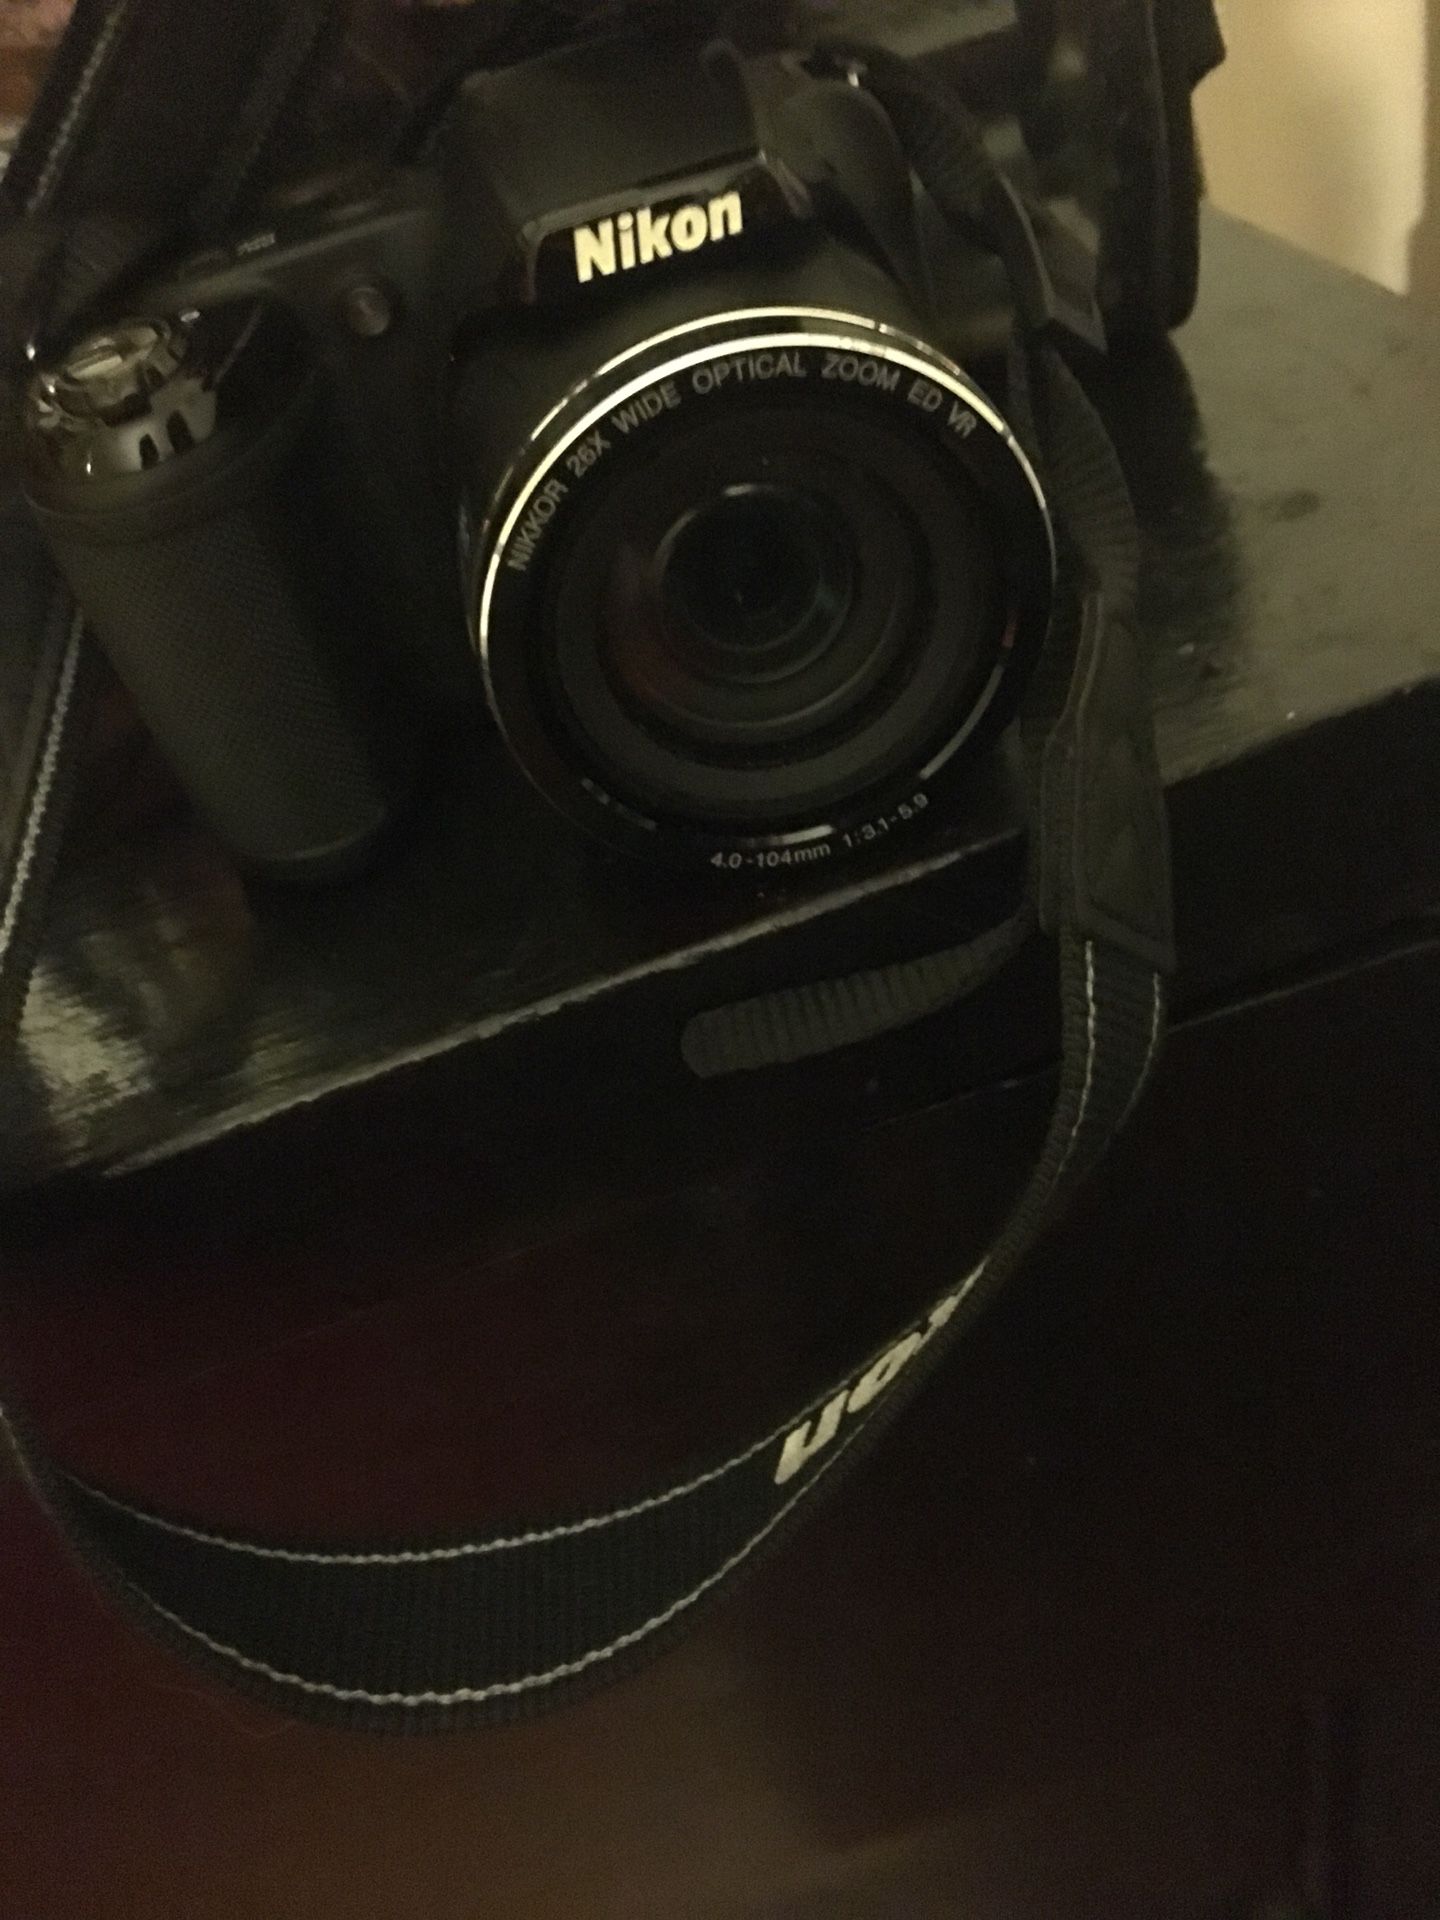 Nikon coolpix L320 digital camera